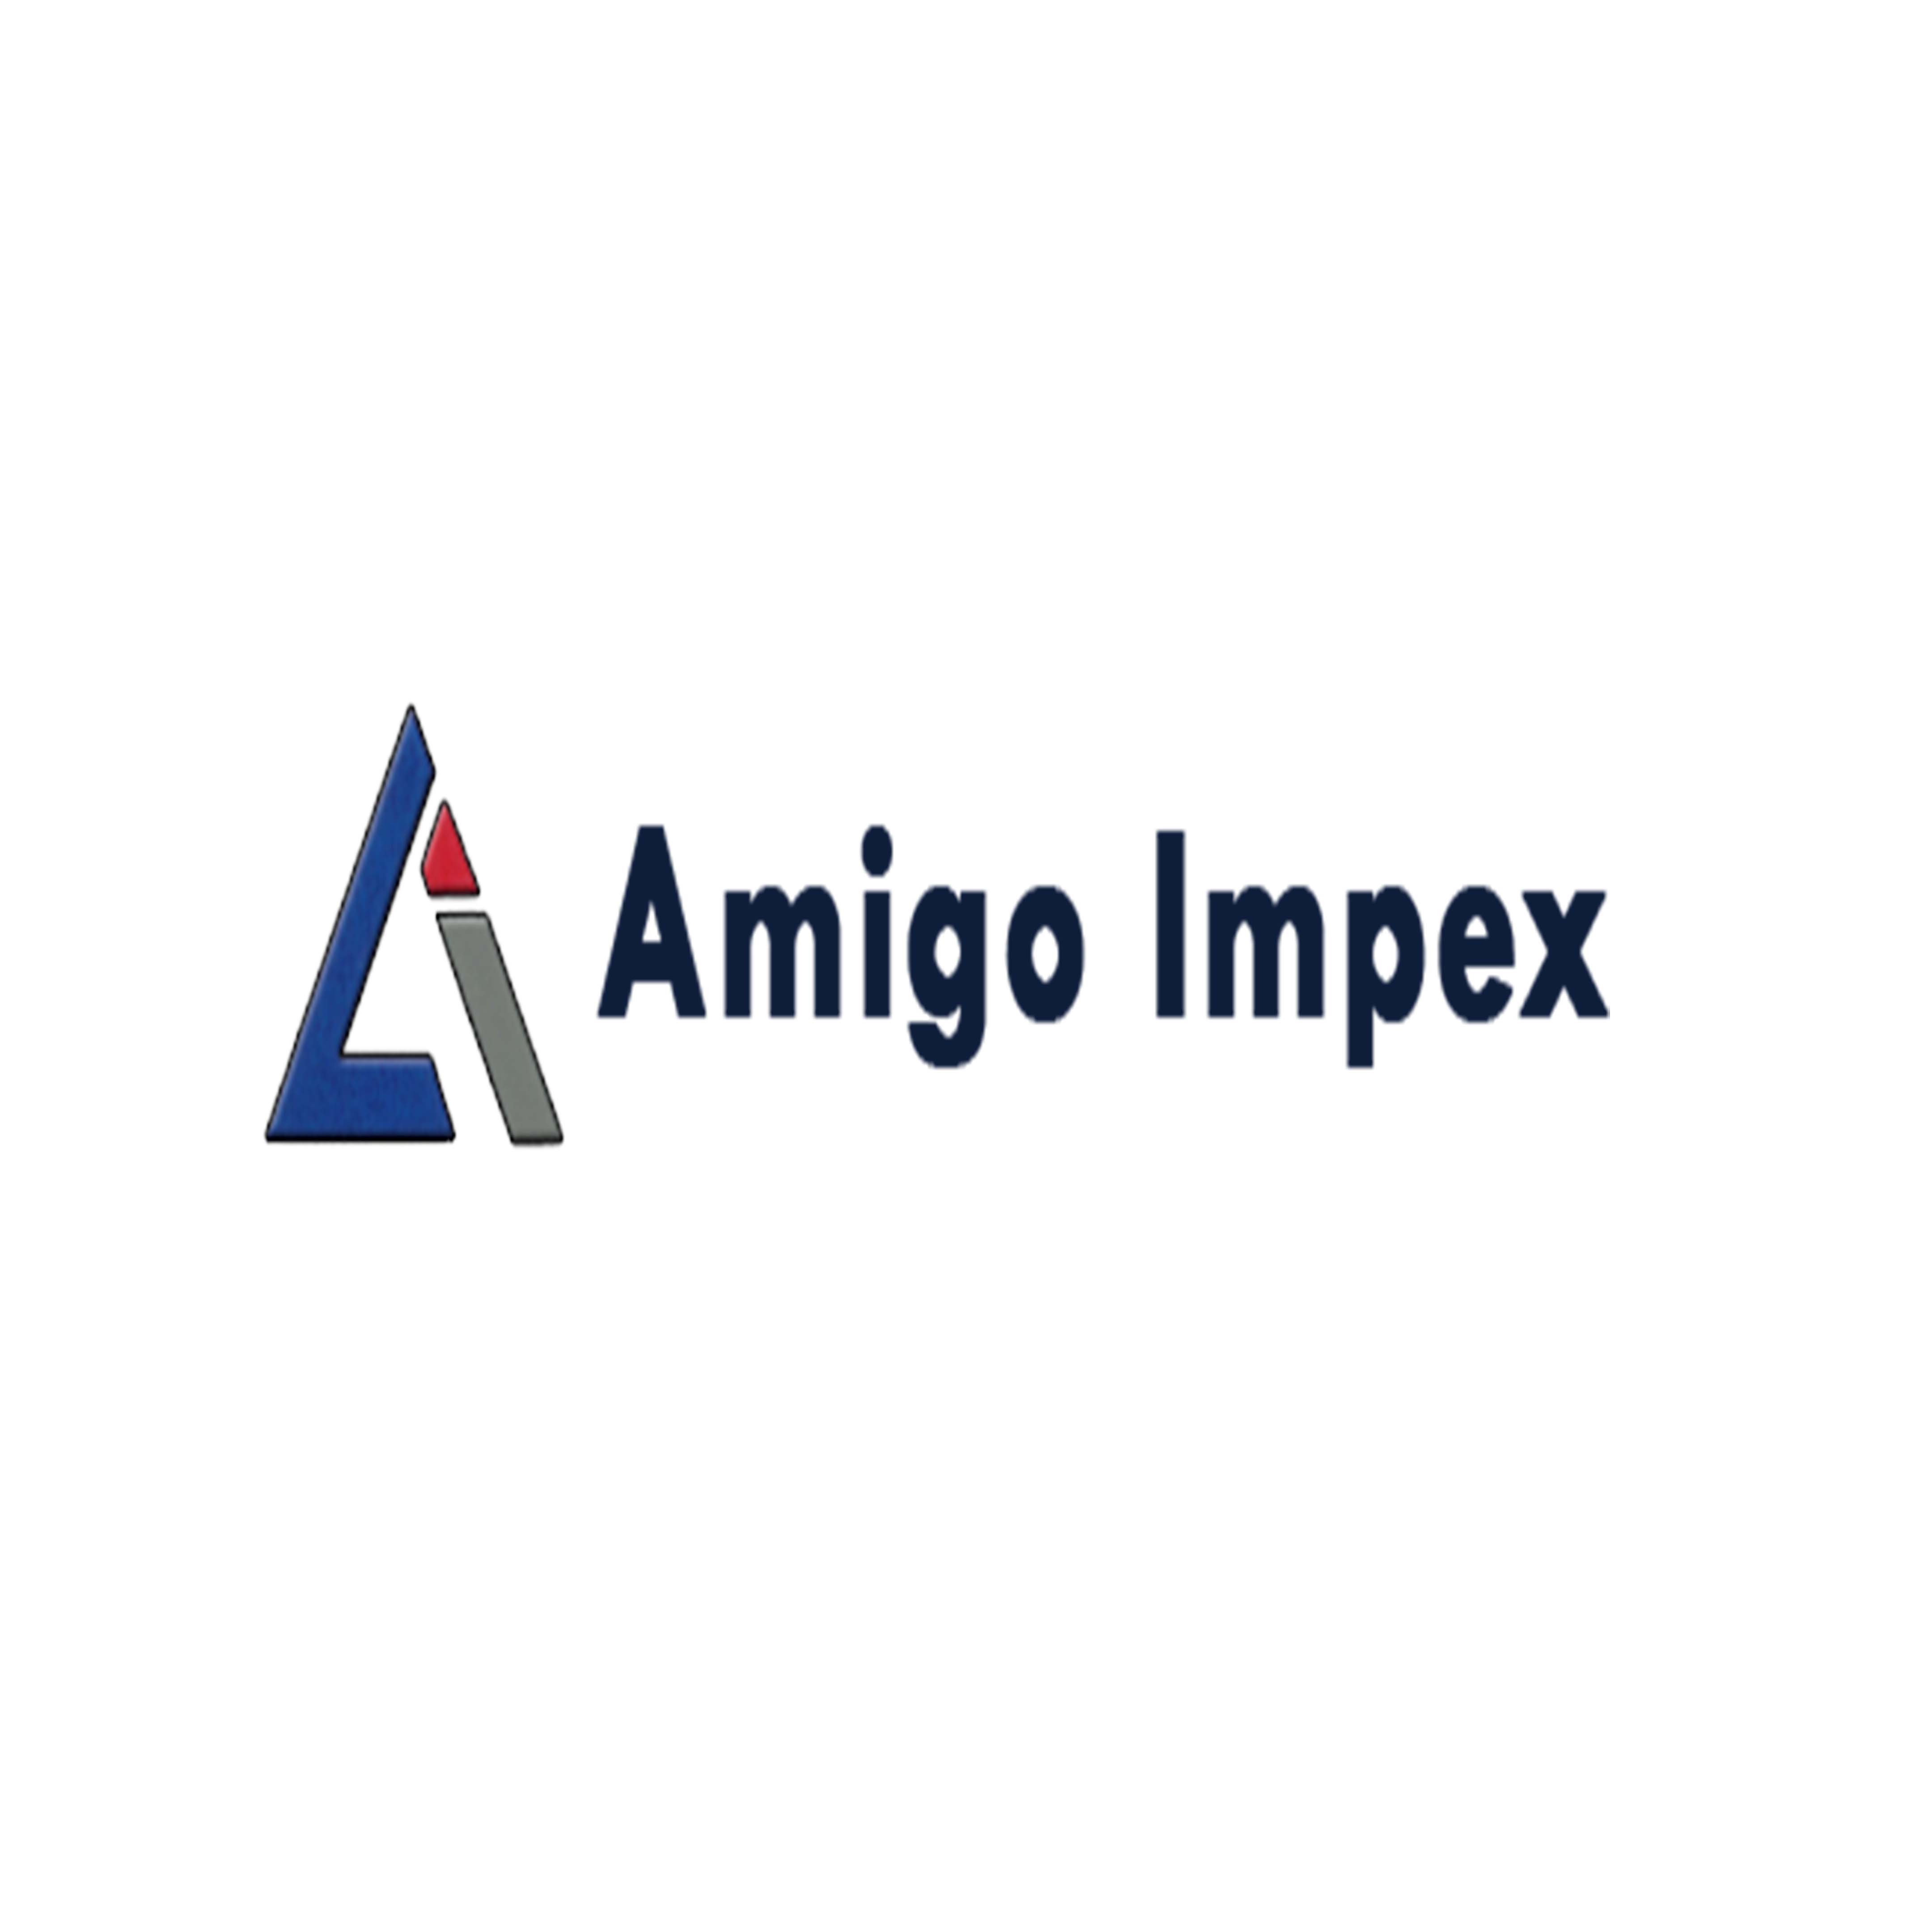 Amigo Impex - Biz info systems